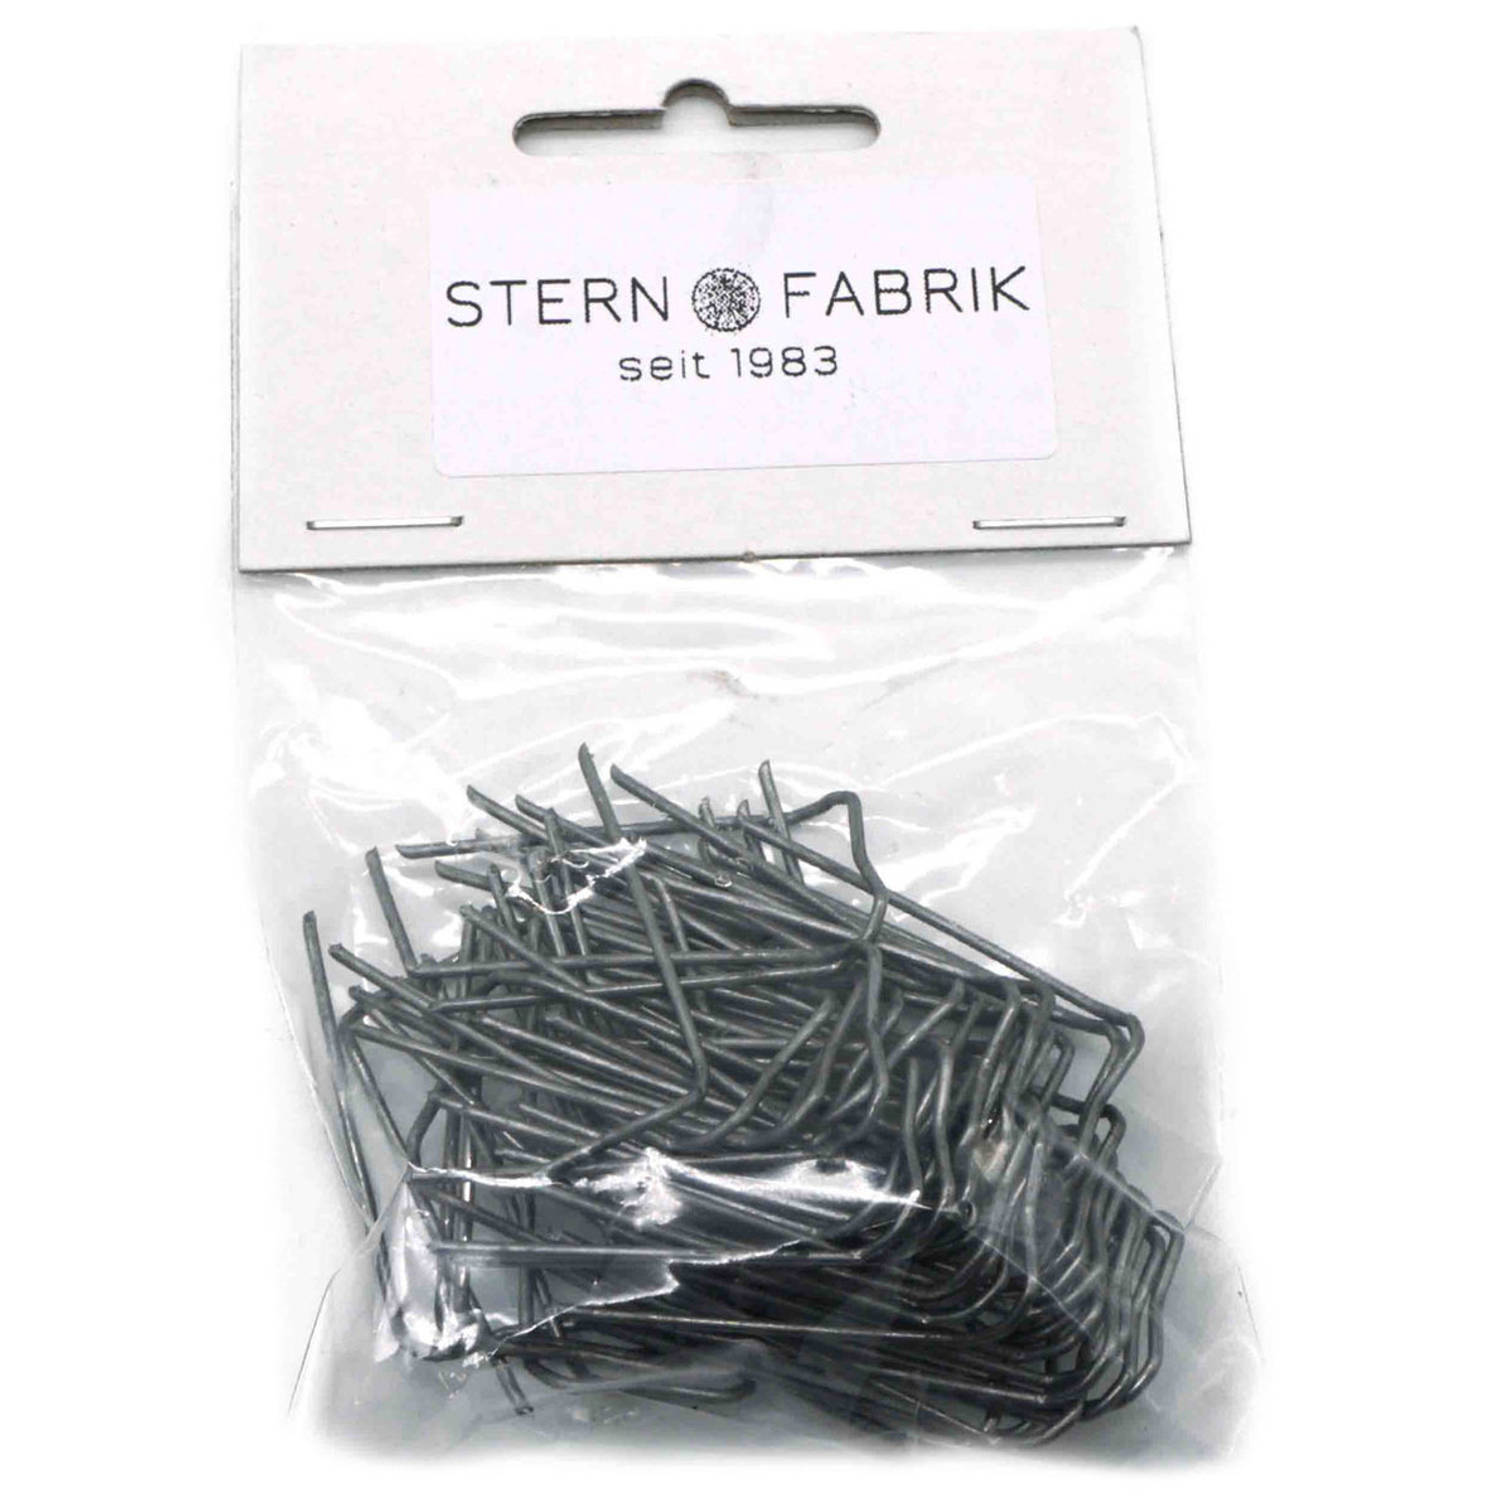 Stern Fabrik steekkrammen - 50x stuks - 35 mm - krammetjes/patentkrammen/klemmetjes